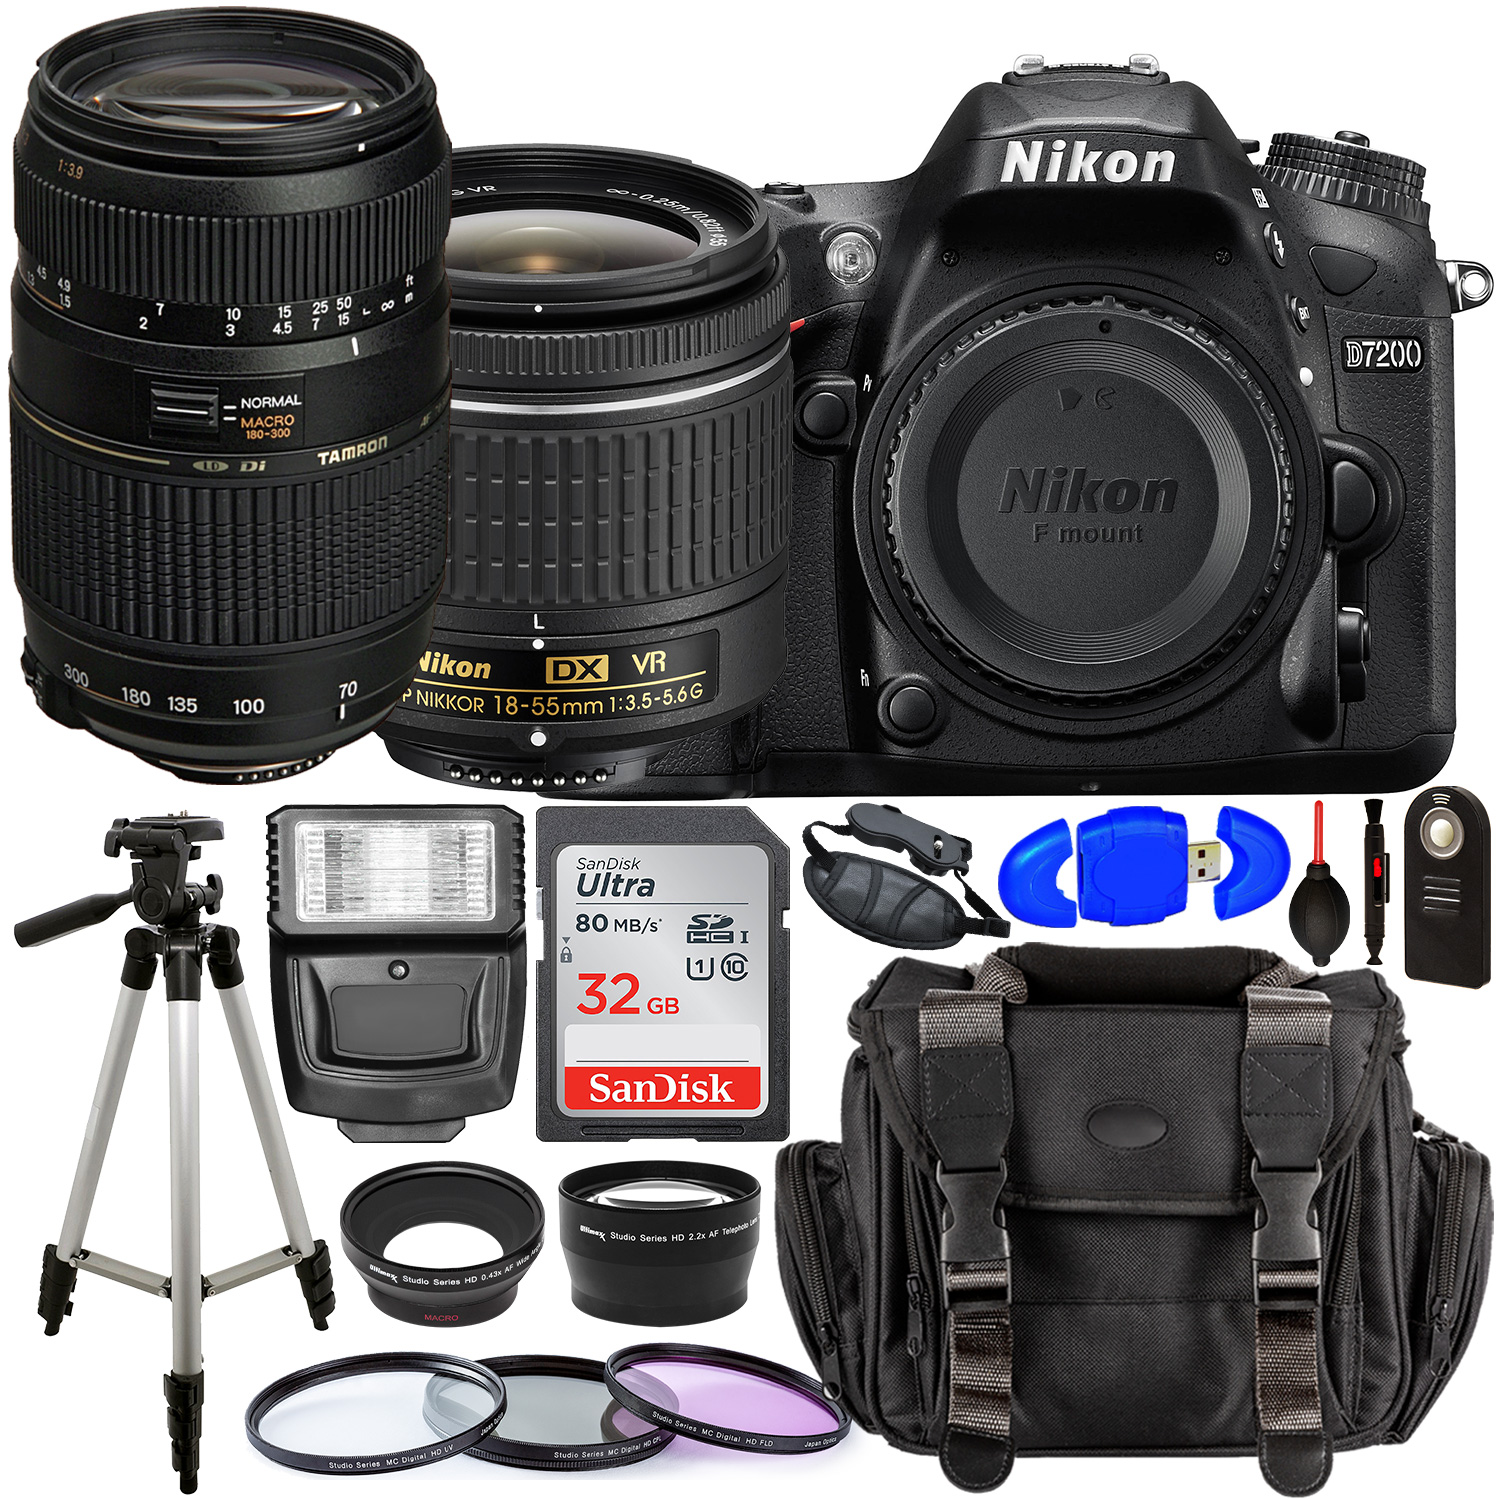 Nikon D7200 DSLR Camera with 18-55mm Lens (Black) â?? 1555 with Tamron 70-300mm Lens for Nikon AF - AF017NII-700 and Accessory Bundle